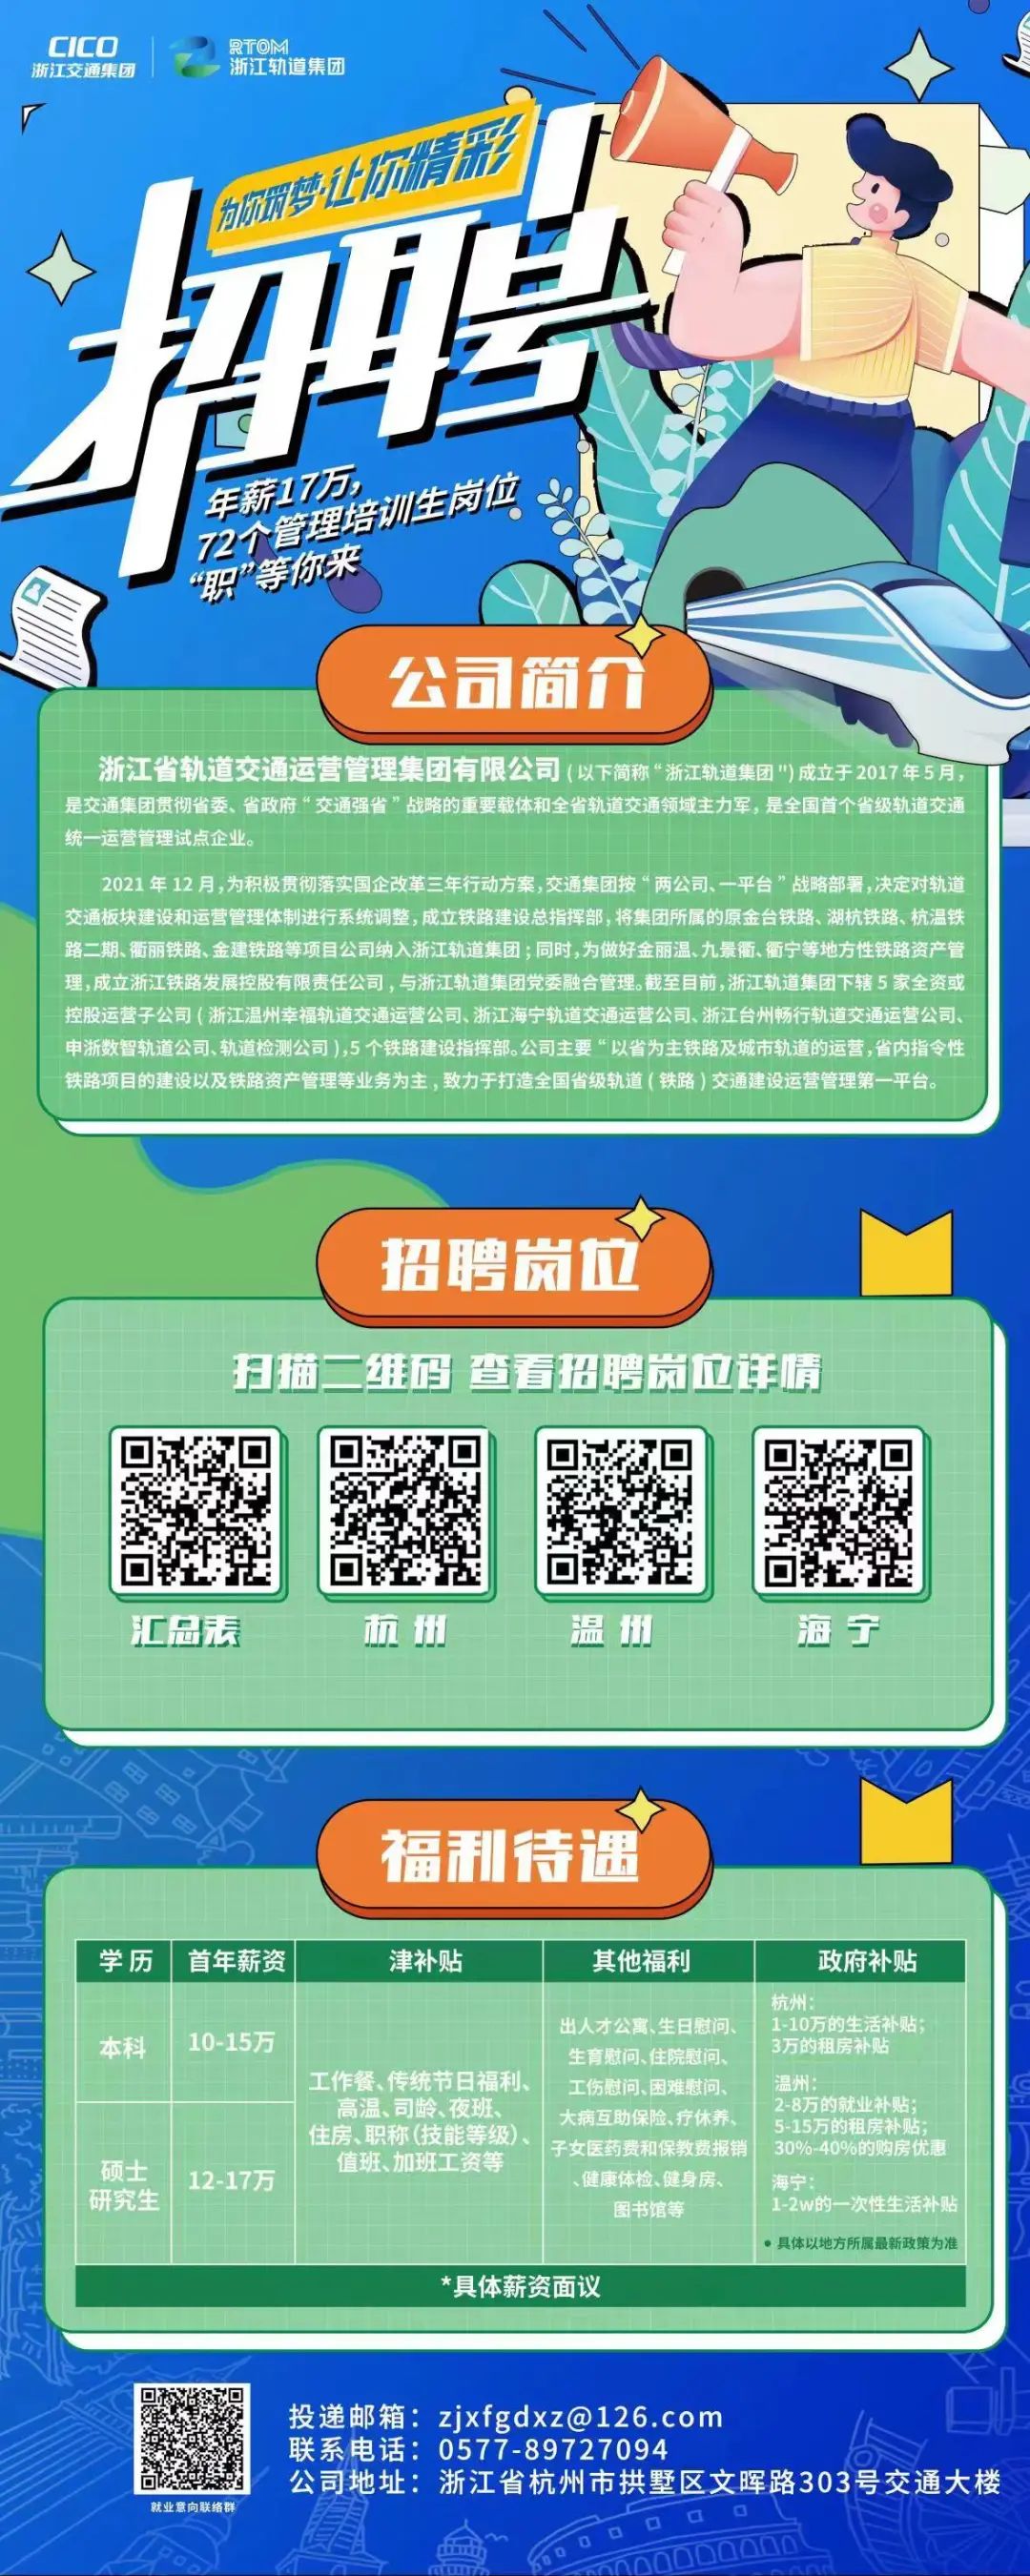 广州地铁招聘信息 | 自由微信 | FreeWeChat